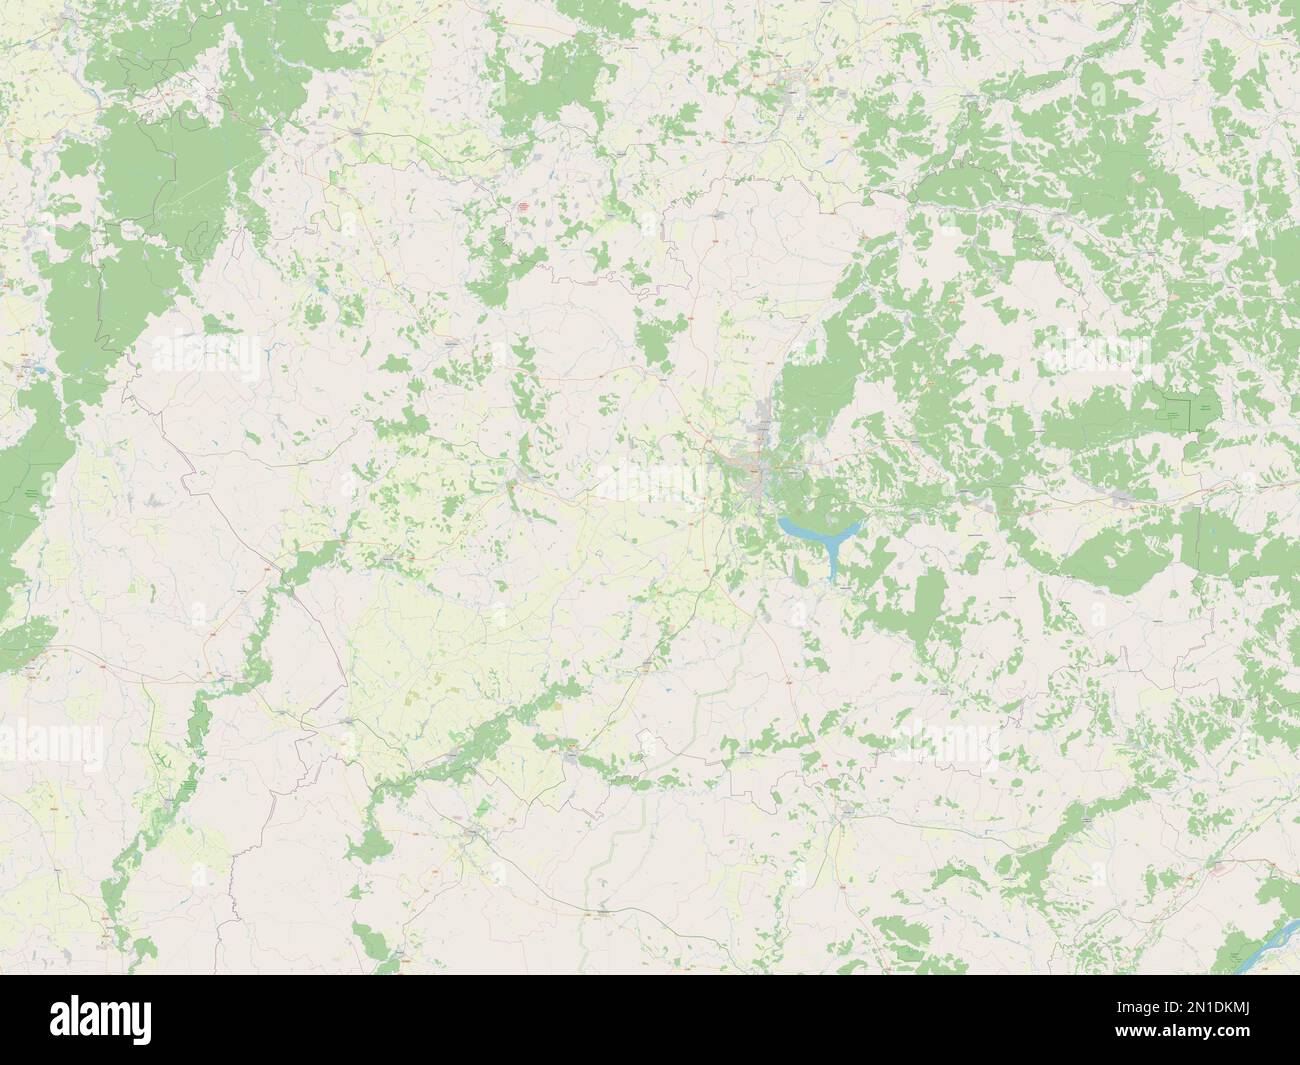 Penza, region of Russia. Open Street Map Stock Photo